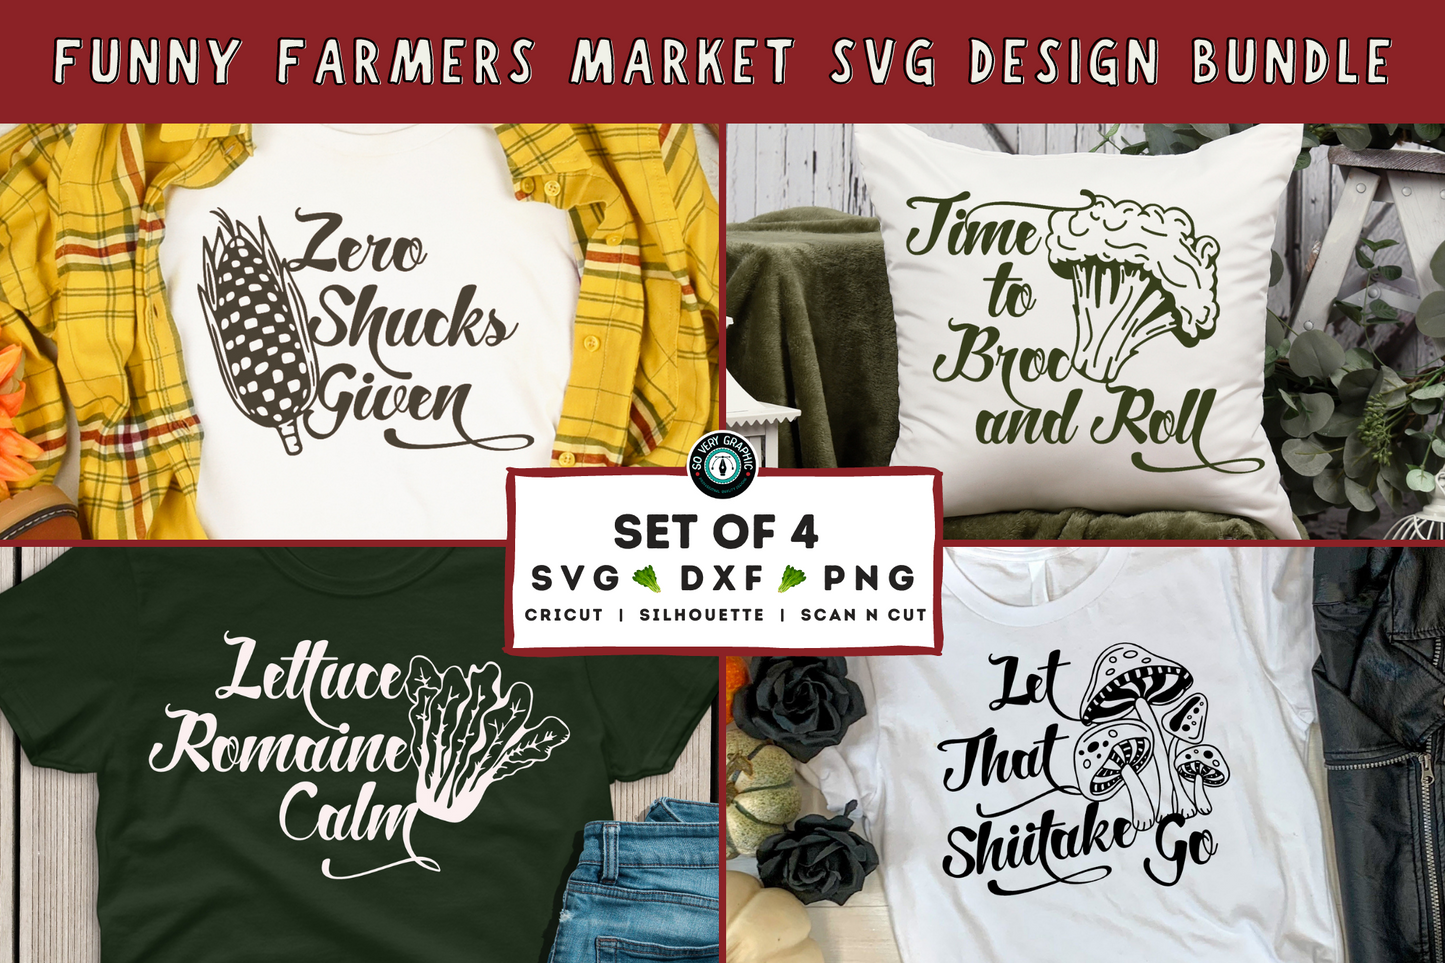 Farmers Market Funny SVG Design Bundle